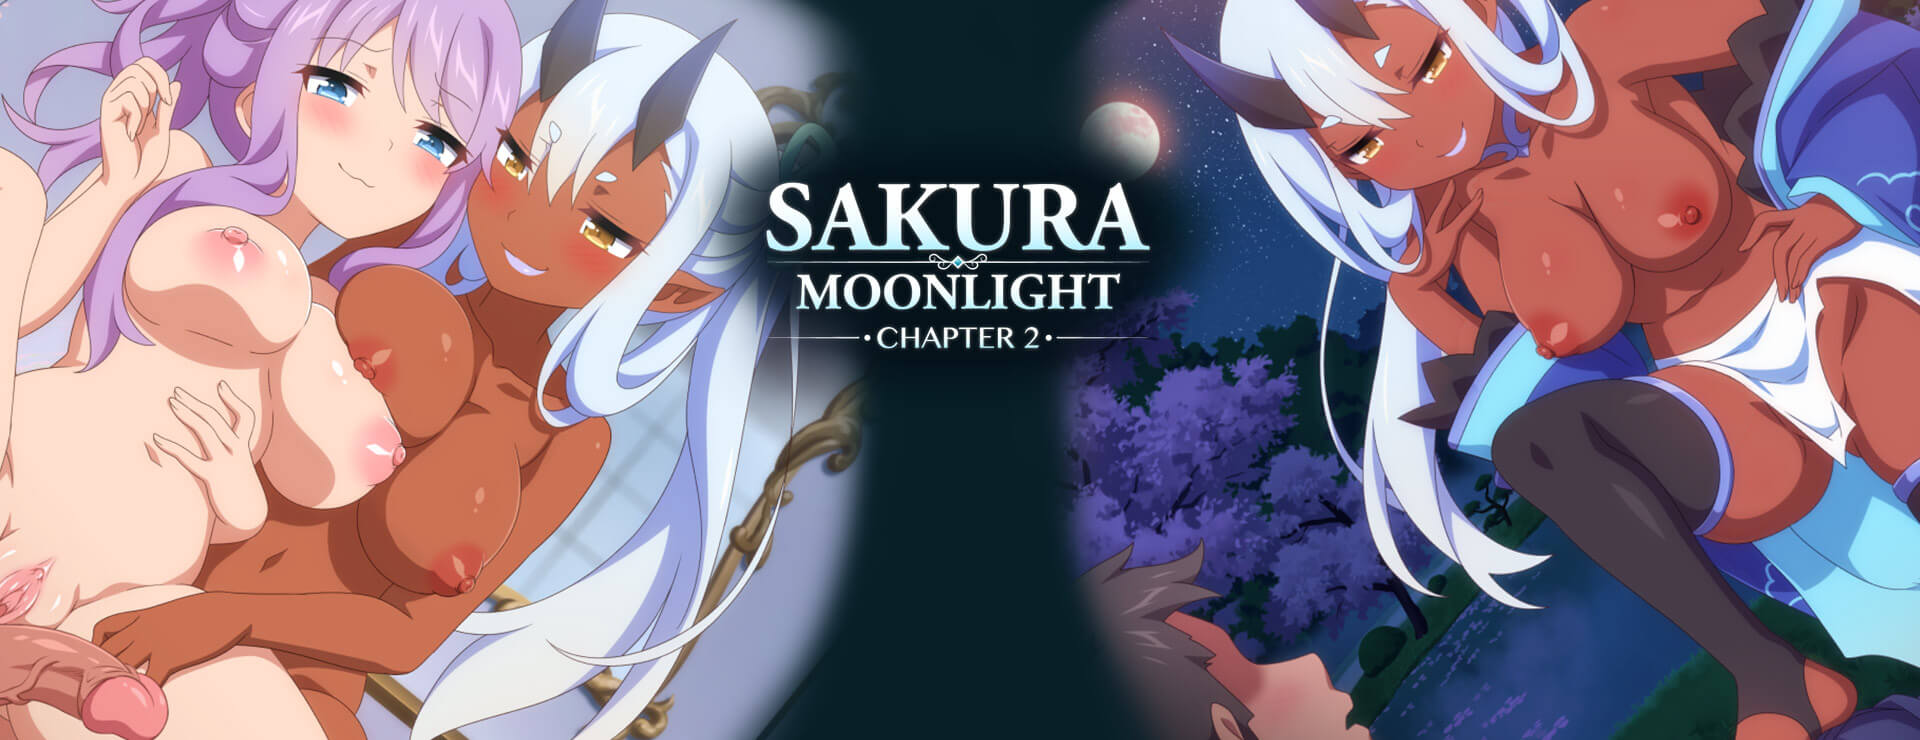 Sakura Moonlight Chapter 2 - Japanisches Adventure Spiel